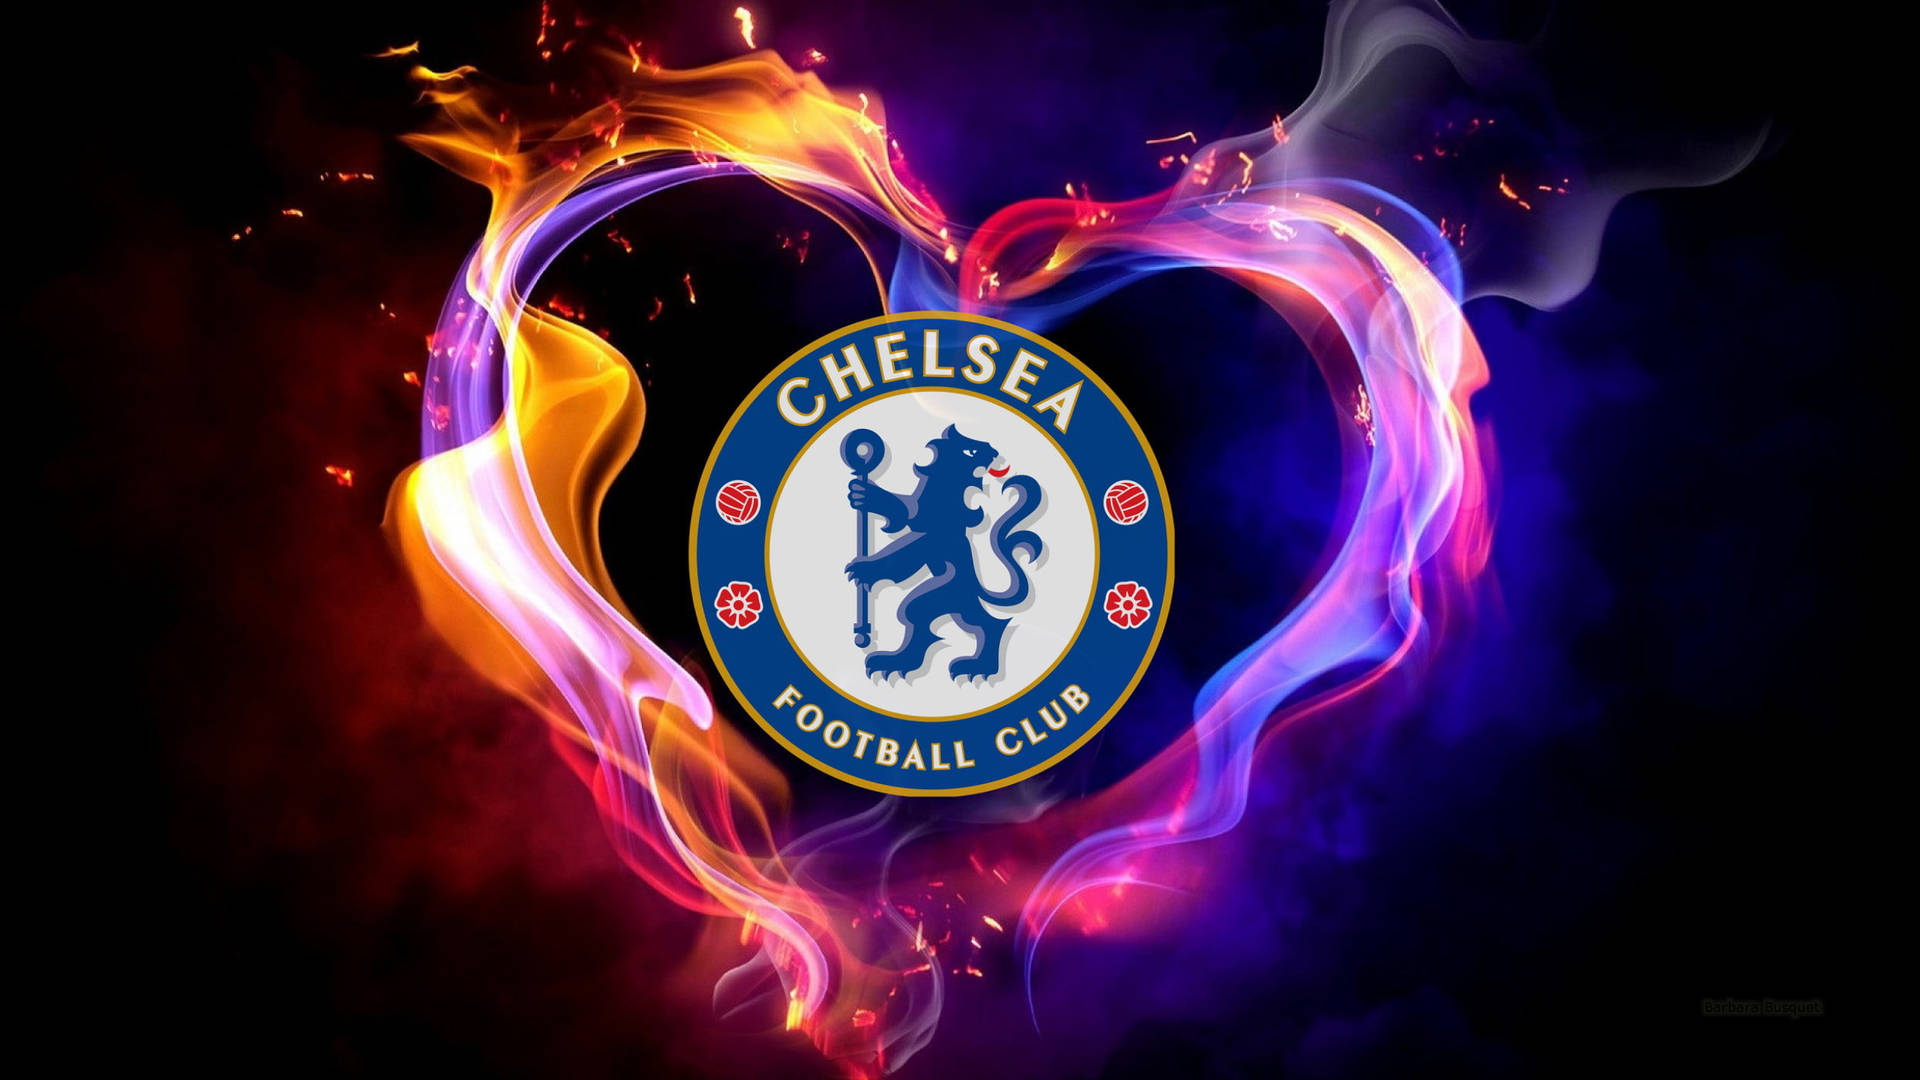 Fondode Pantalla Digital Del Logotipo Del Chelsea En Forma De Corazón. Fondo de pantalla